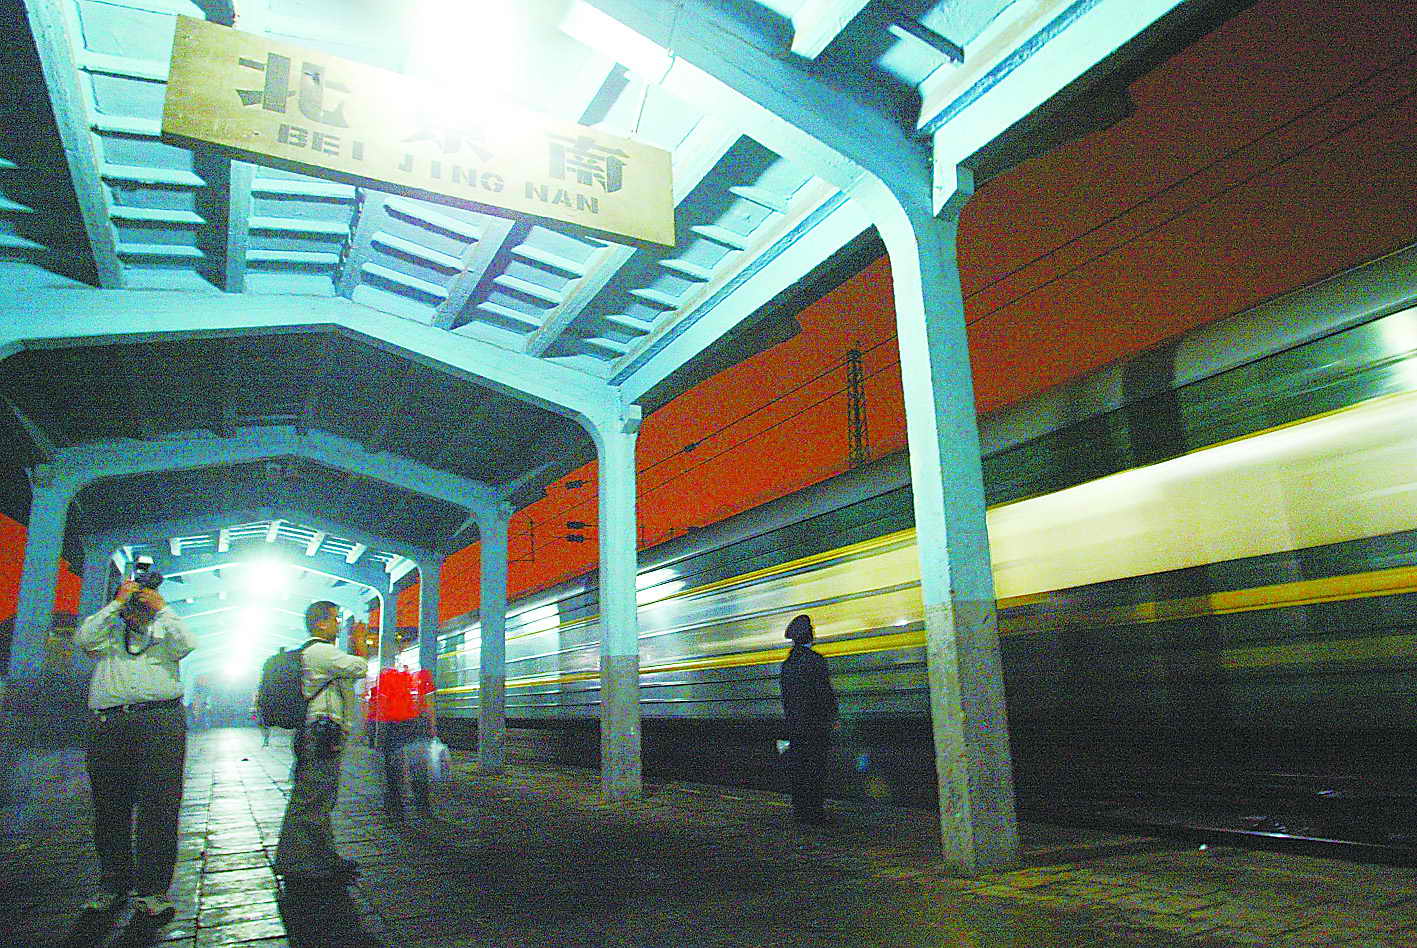 【携程攻略】北京南站，北京南站是北京市最重要的铁路交通枢纽之一，是高铁动车入站的火车站…